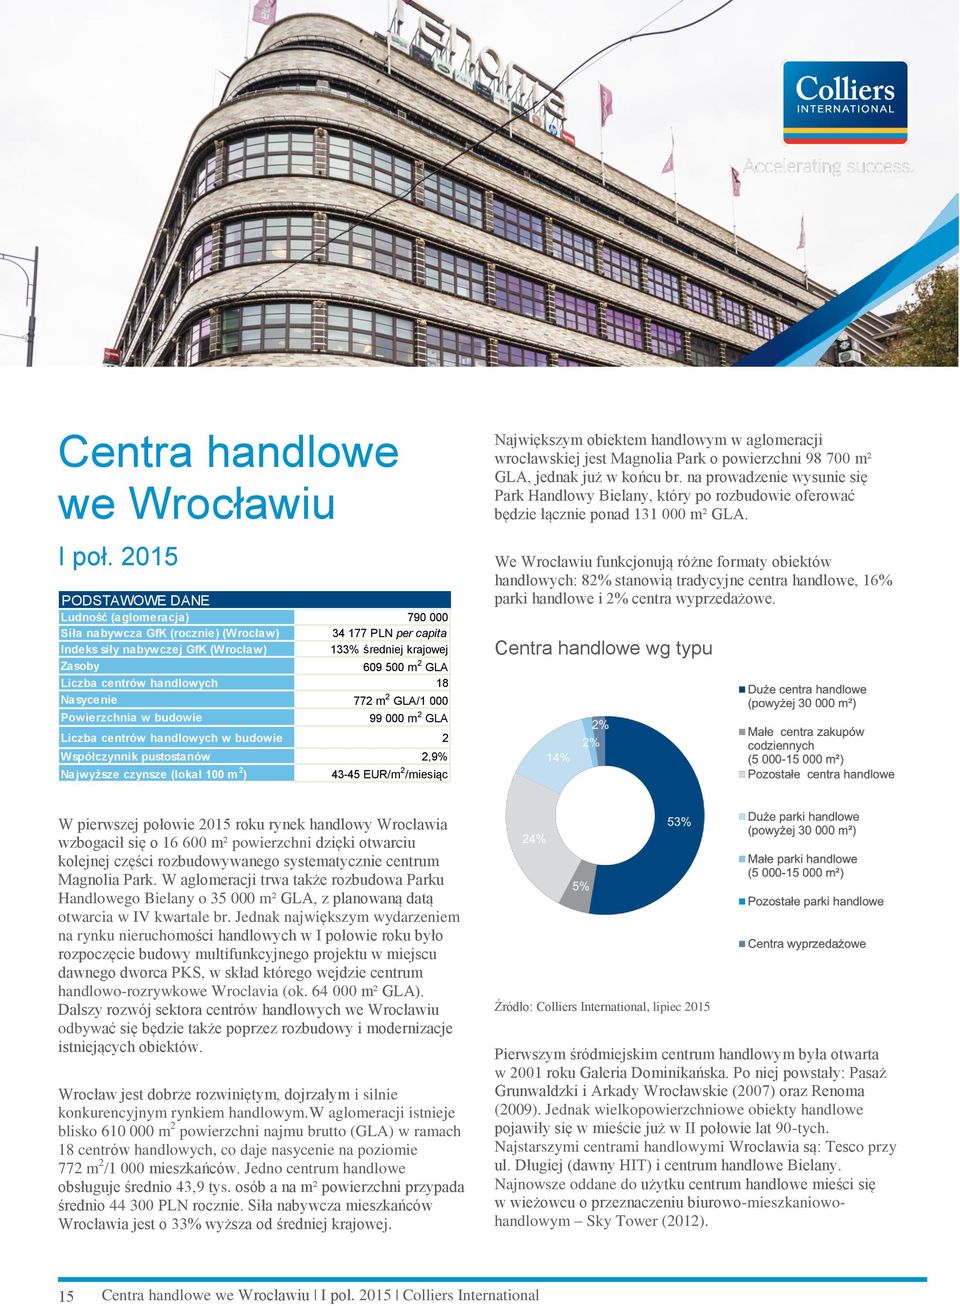 2015 We Wrocławiu funkcjonują różne formaty obiektów handlowych: 82% stanowią tradycyjne centra handlowe, 16% parki handlowe i 2% centra wyprzedażowe.